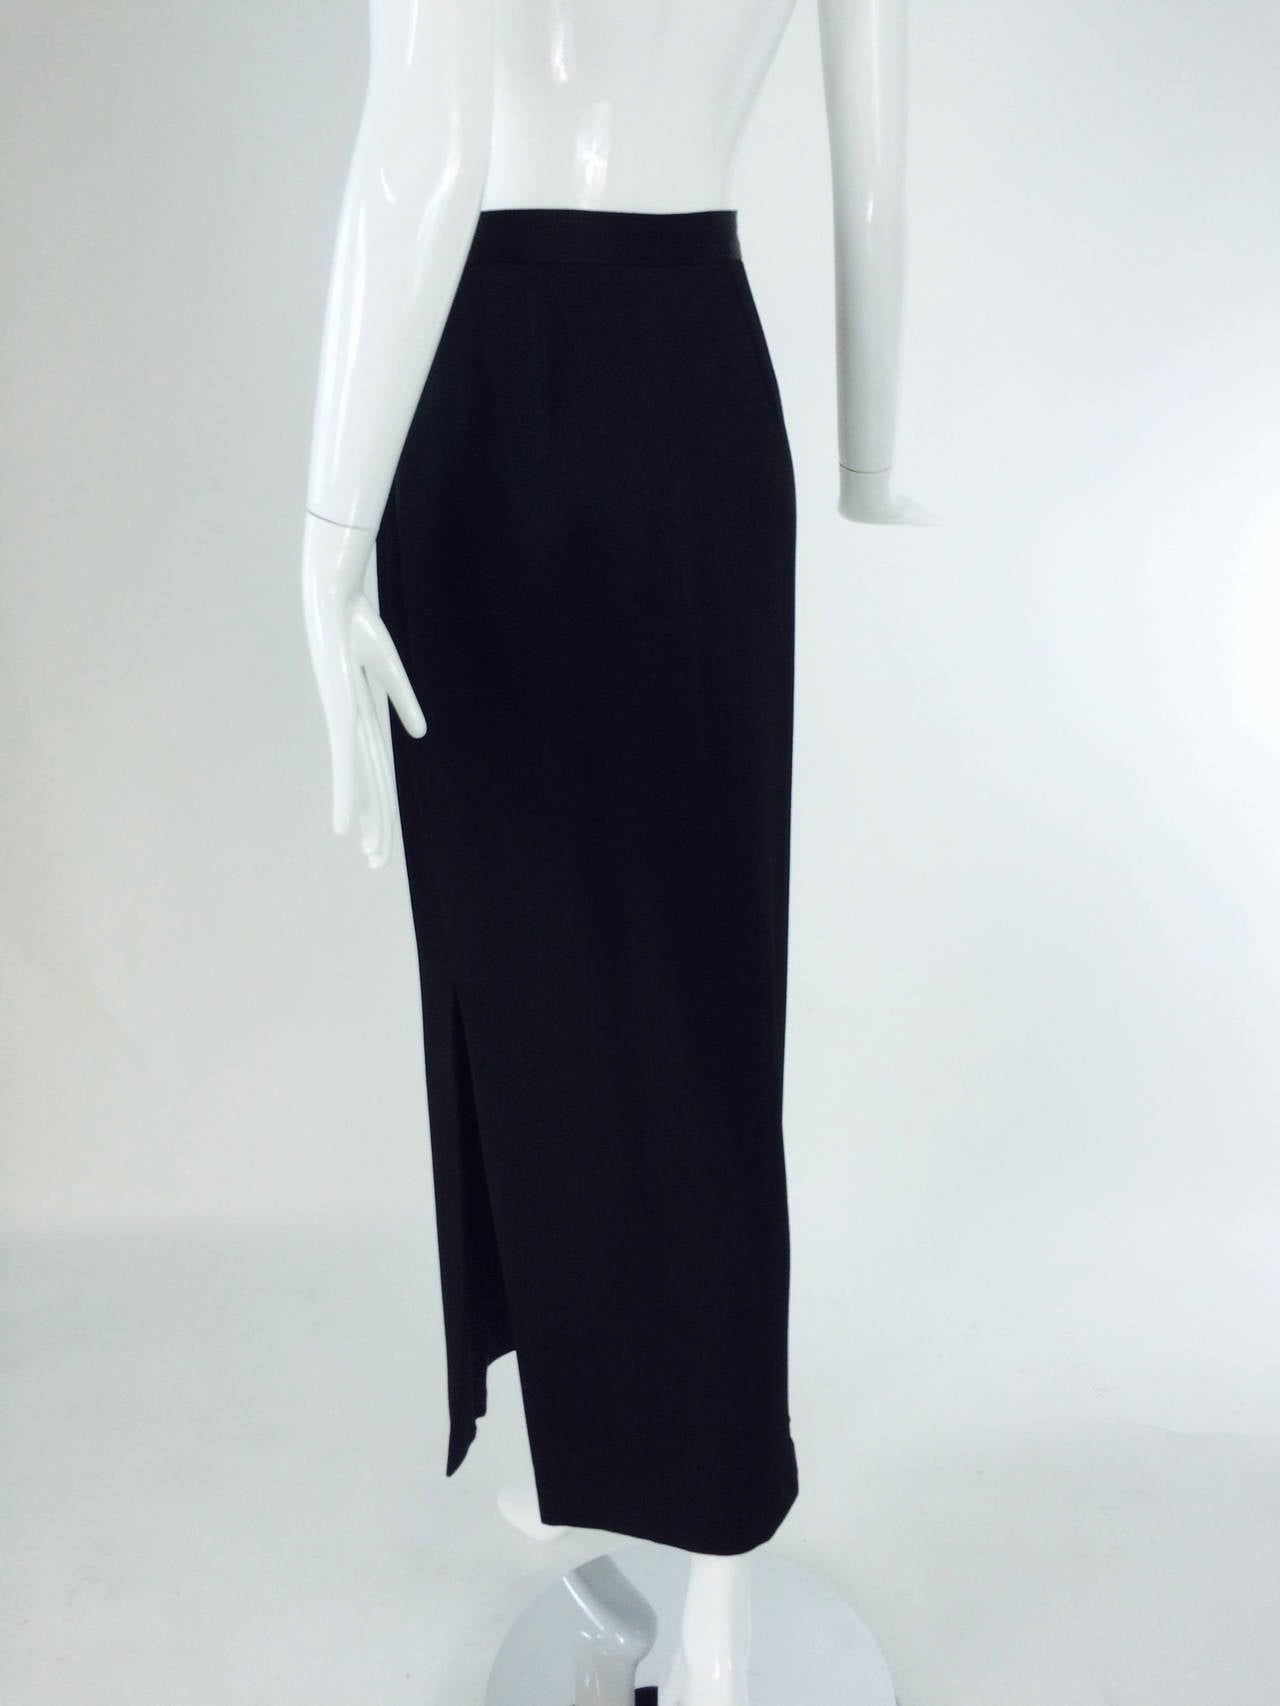 Black Yves St Laurent Rive Gauche black hammered satin evening skirt